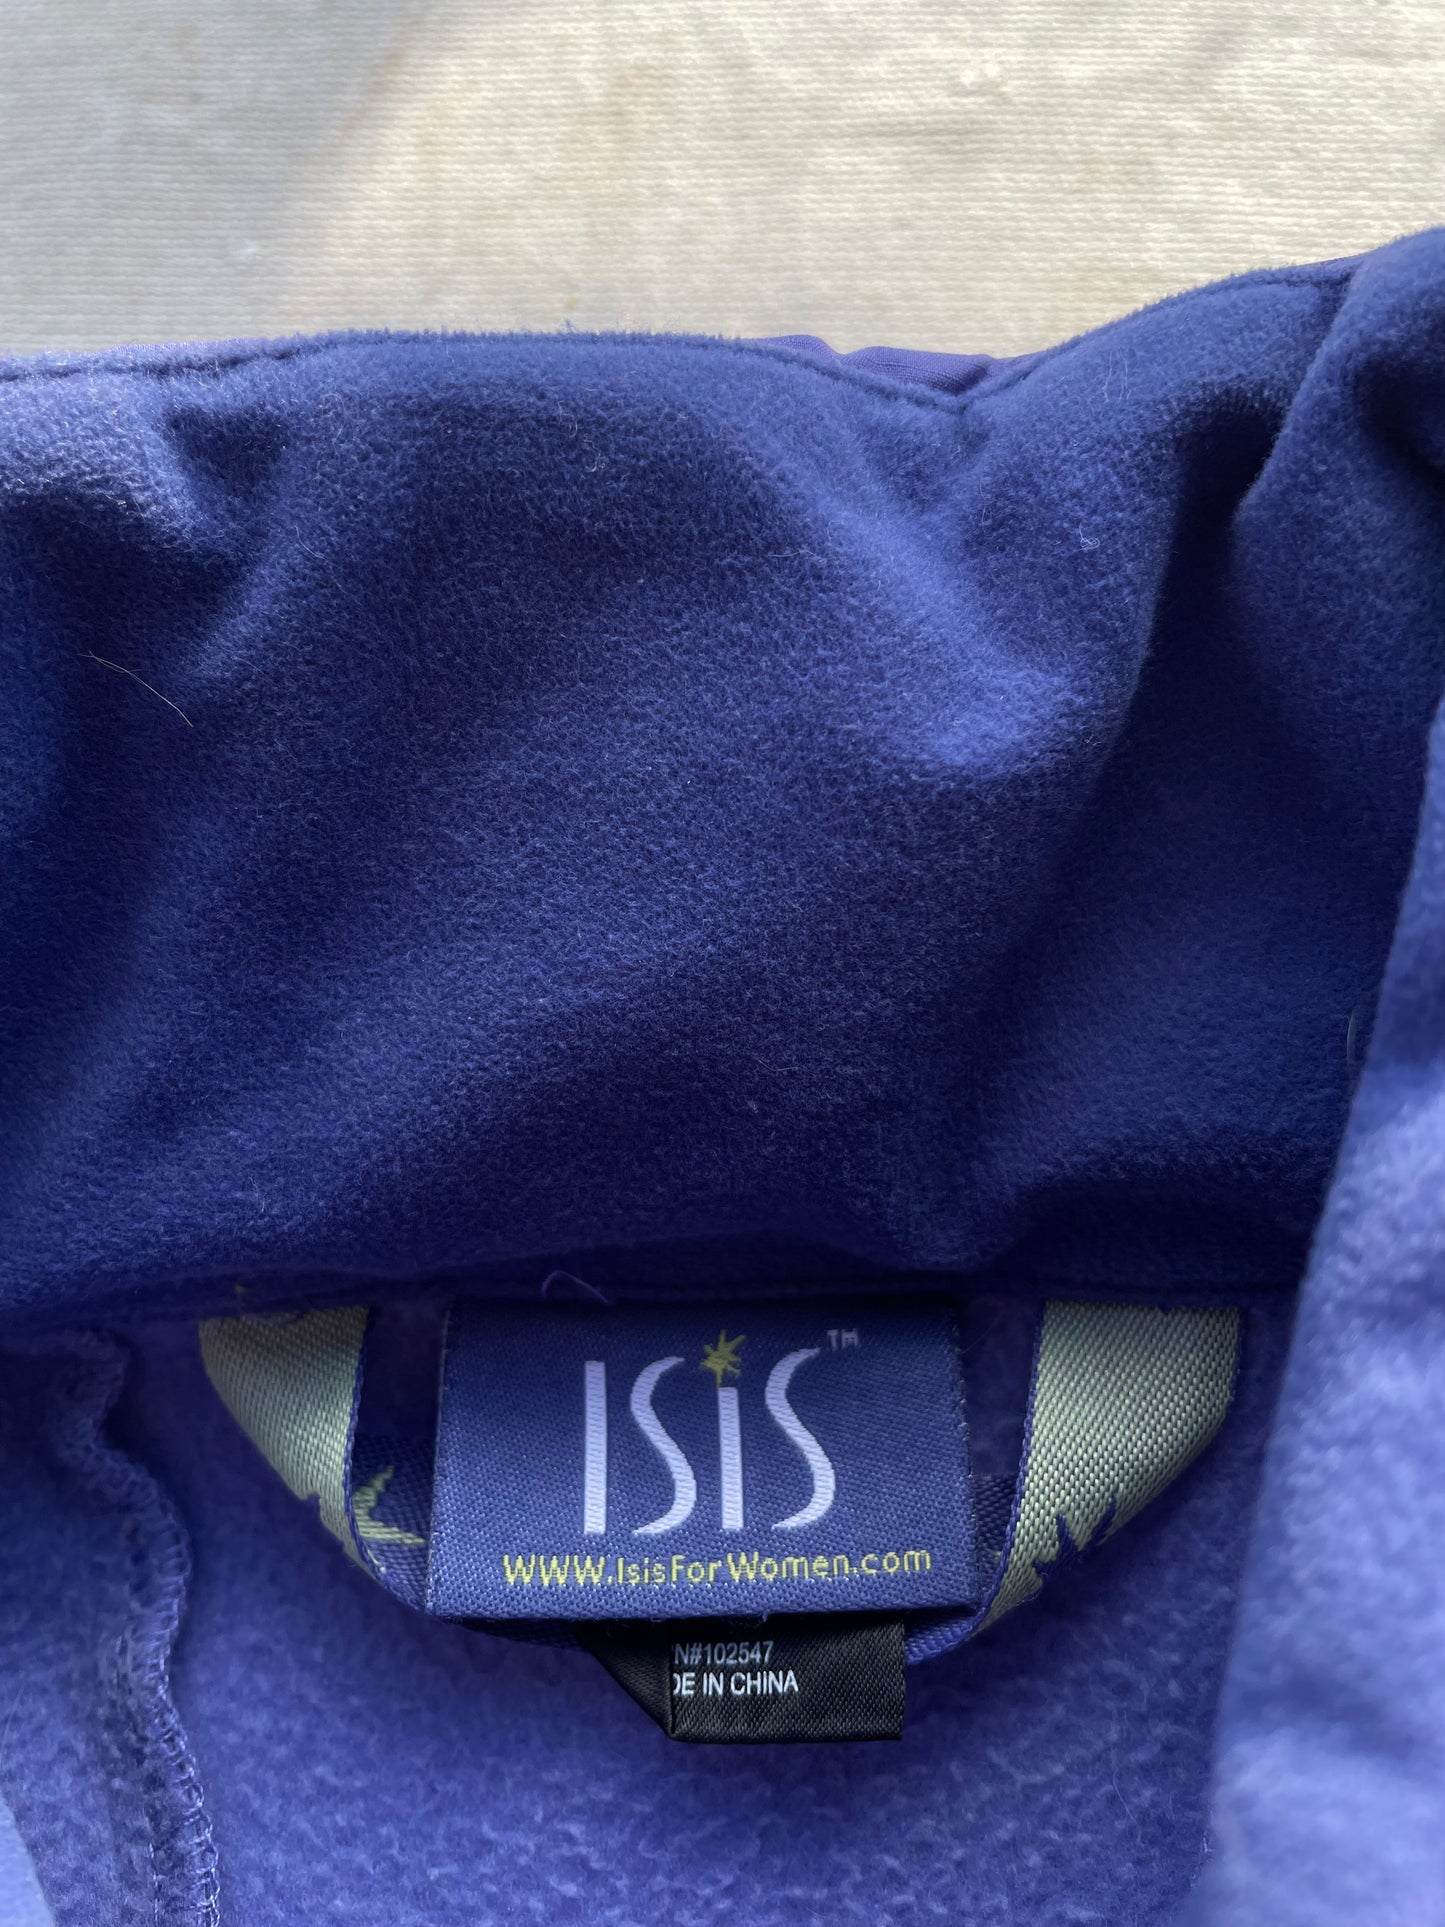 Isis Softshell Jacket—[S/M]